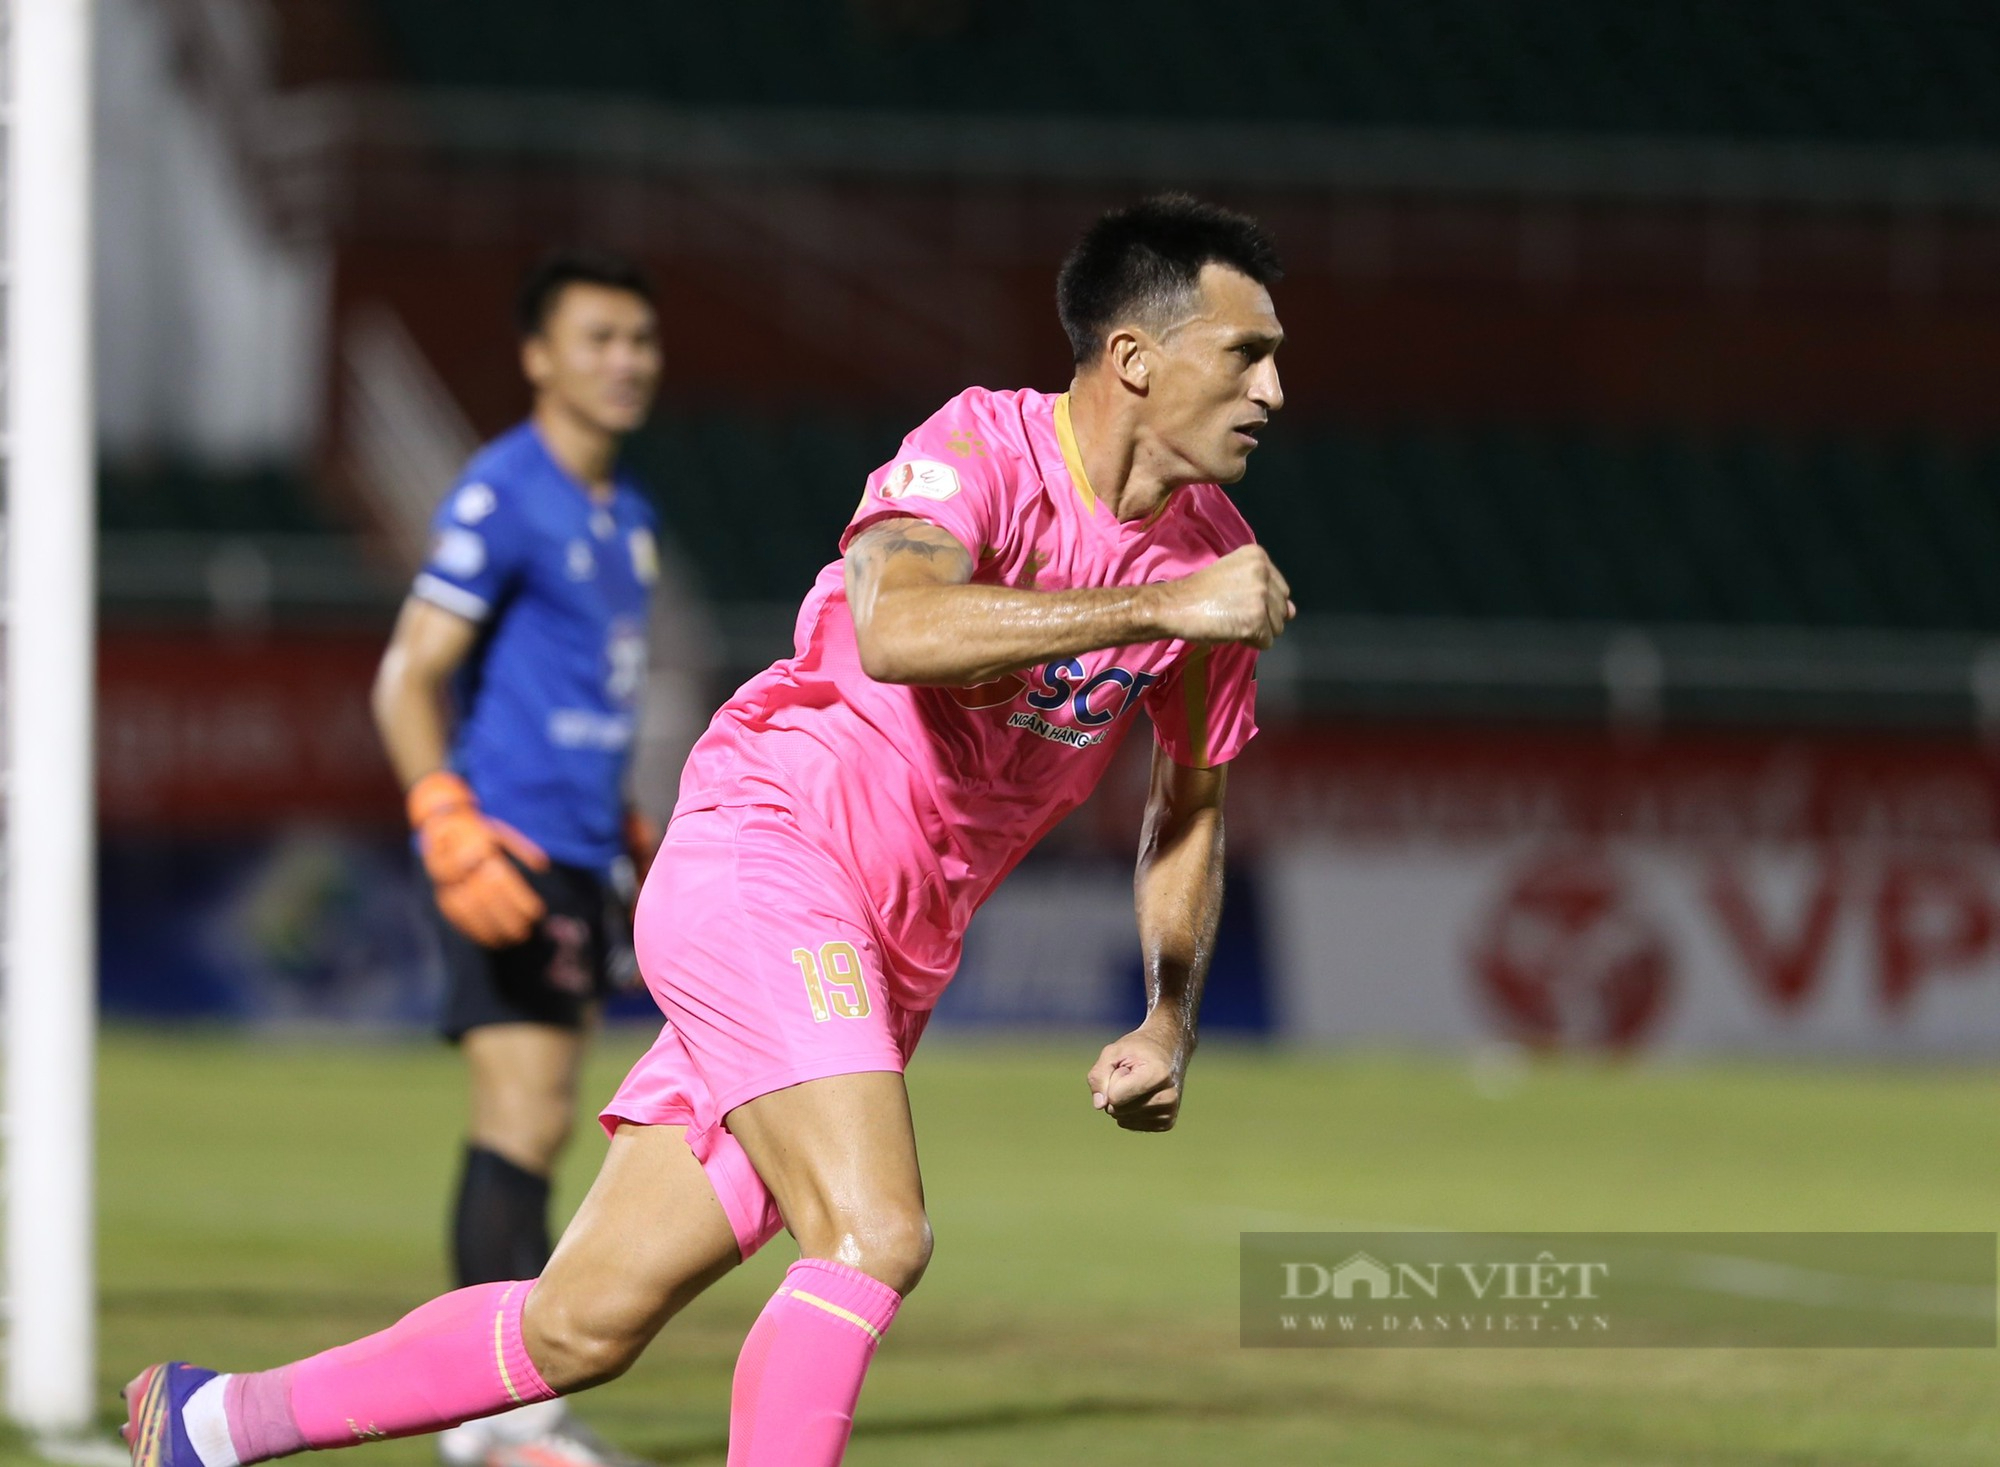 Chơi hơn người, Sài Gòn FC thoát thua trên sân nhà - Ảnh 9.